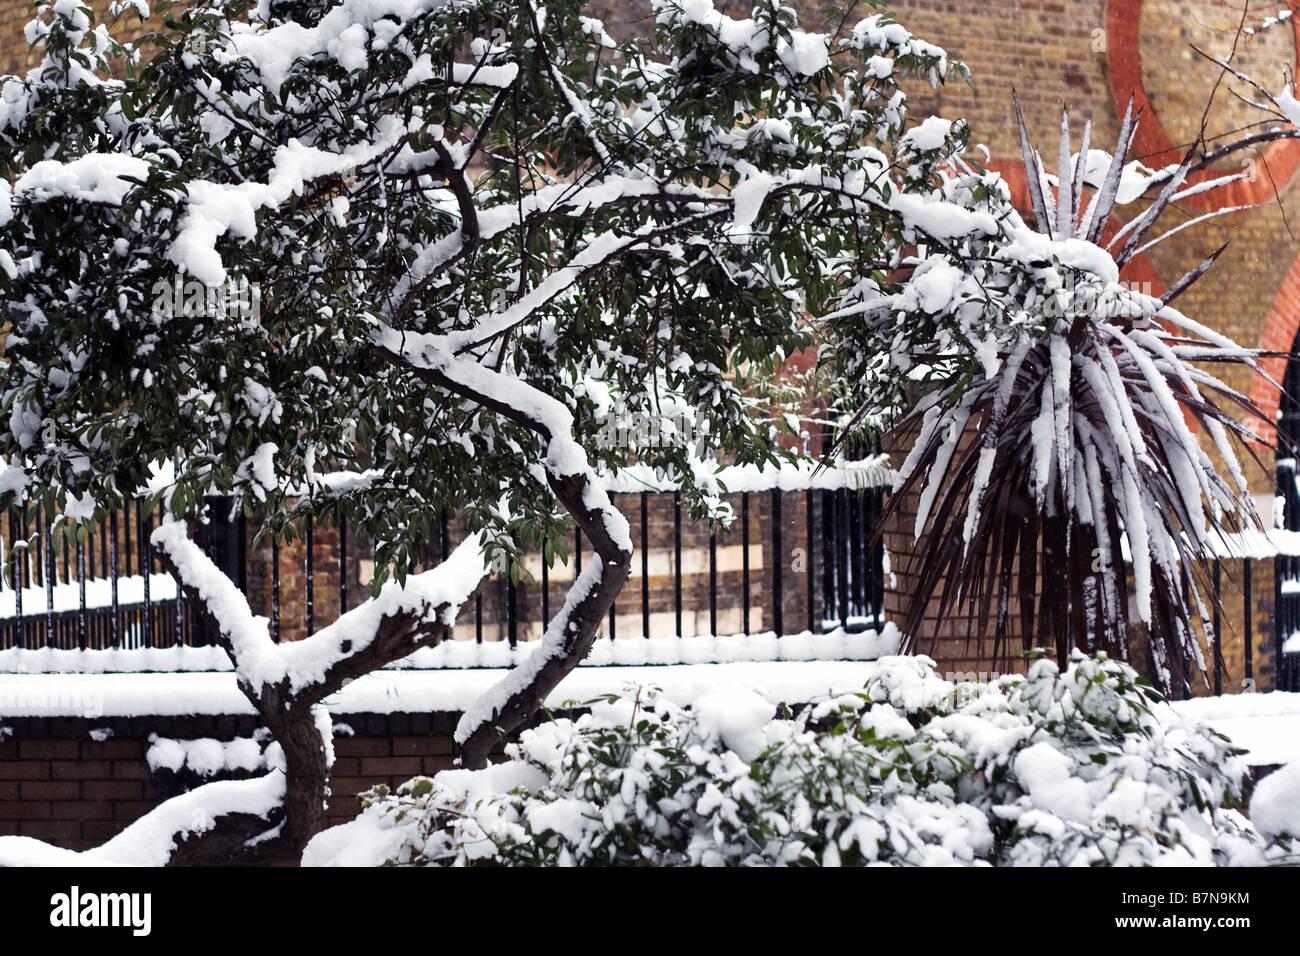 La neige a couvert des arbres et arbustes dans le centre de Londres. Banque D'Images